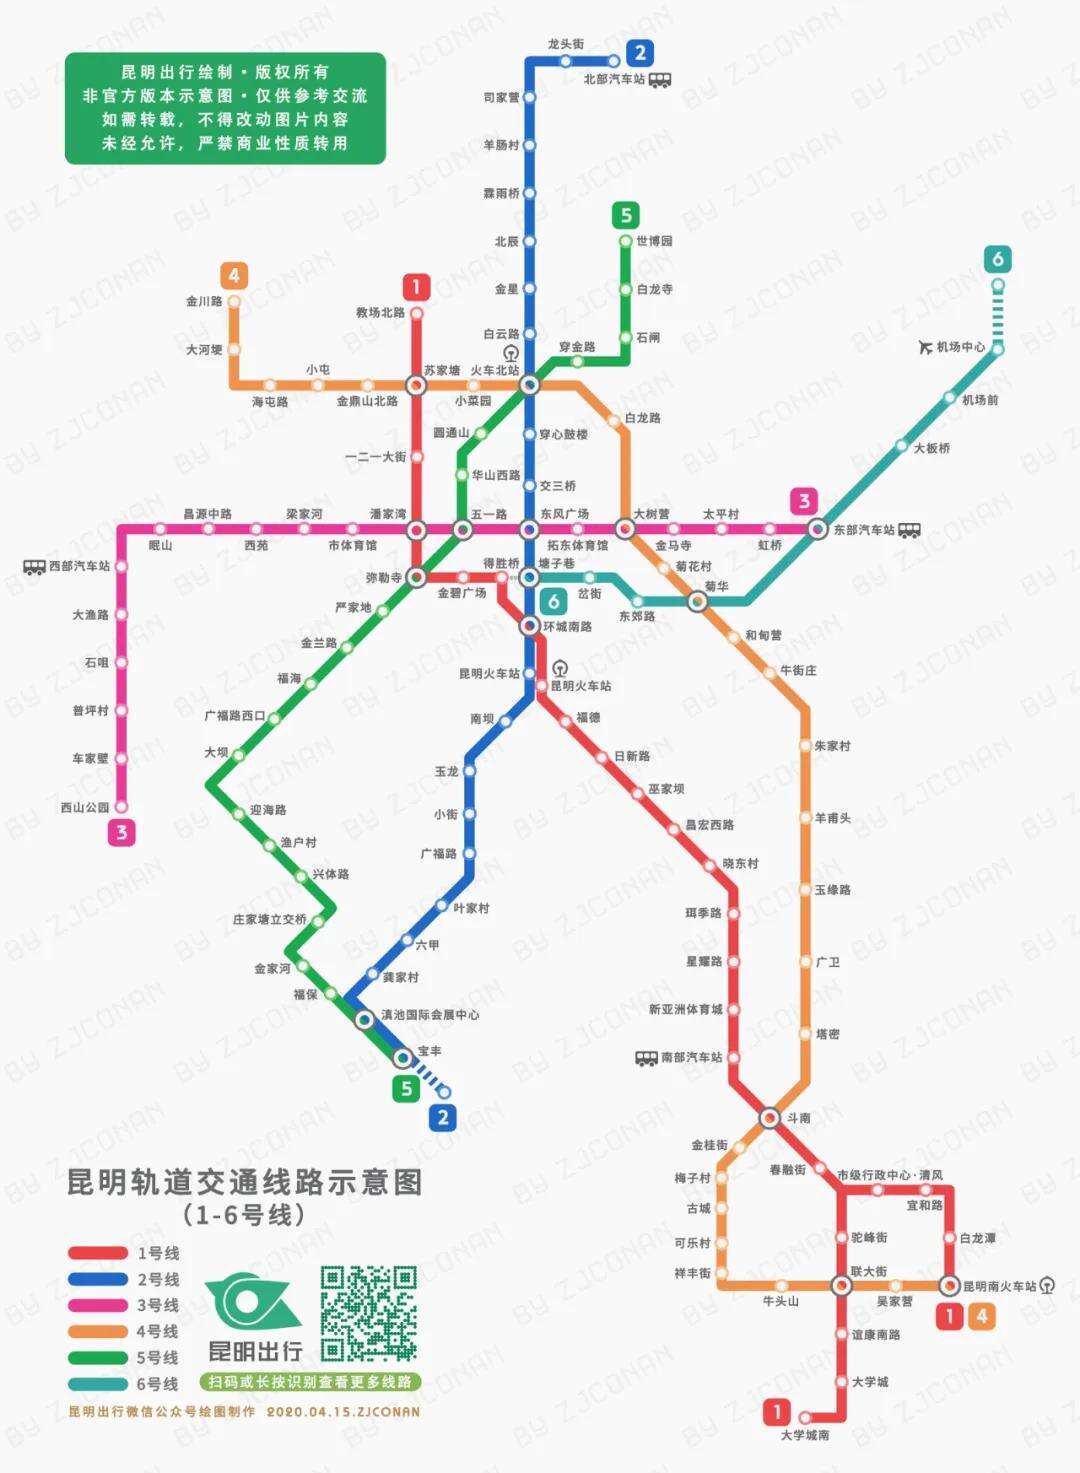 一起来看看 昆明地铁 1,2,4,5,6号线未开通站点 怎么叫～ 来源:烂明